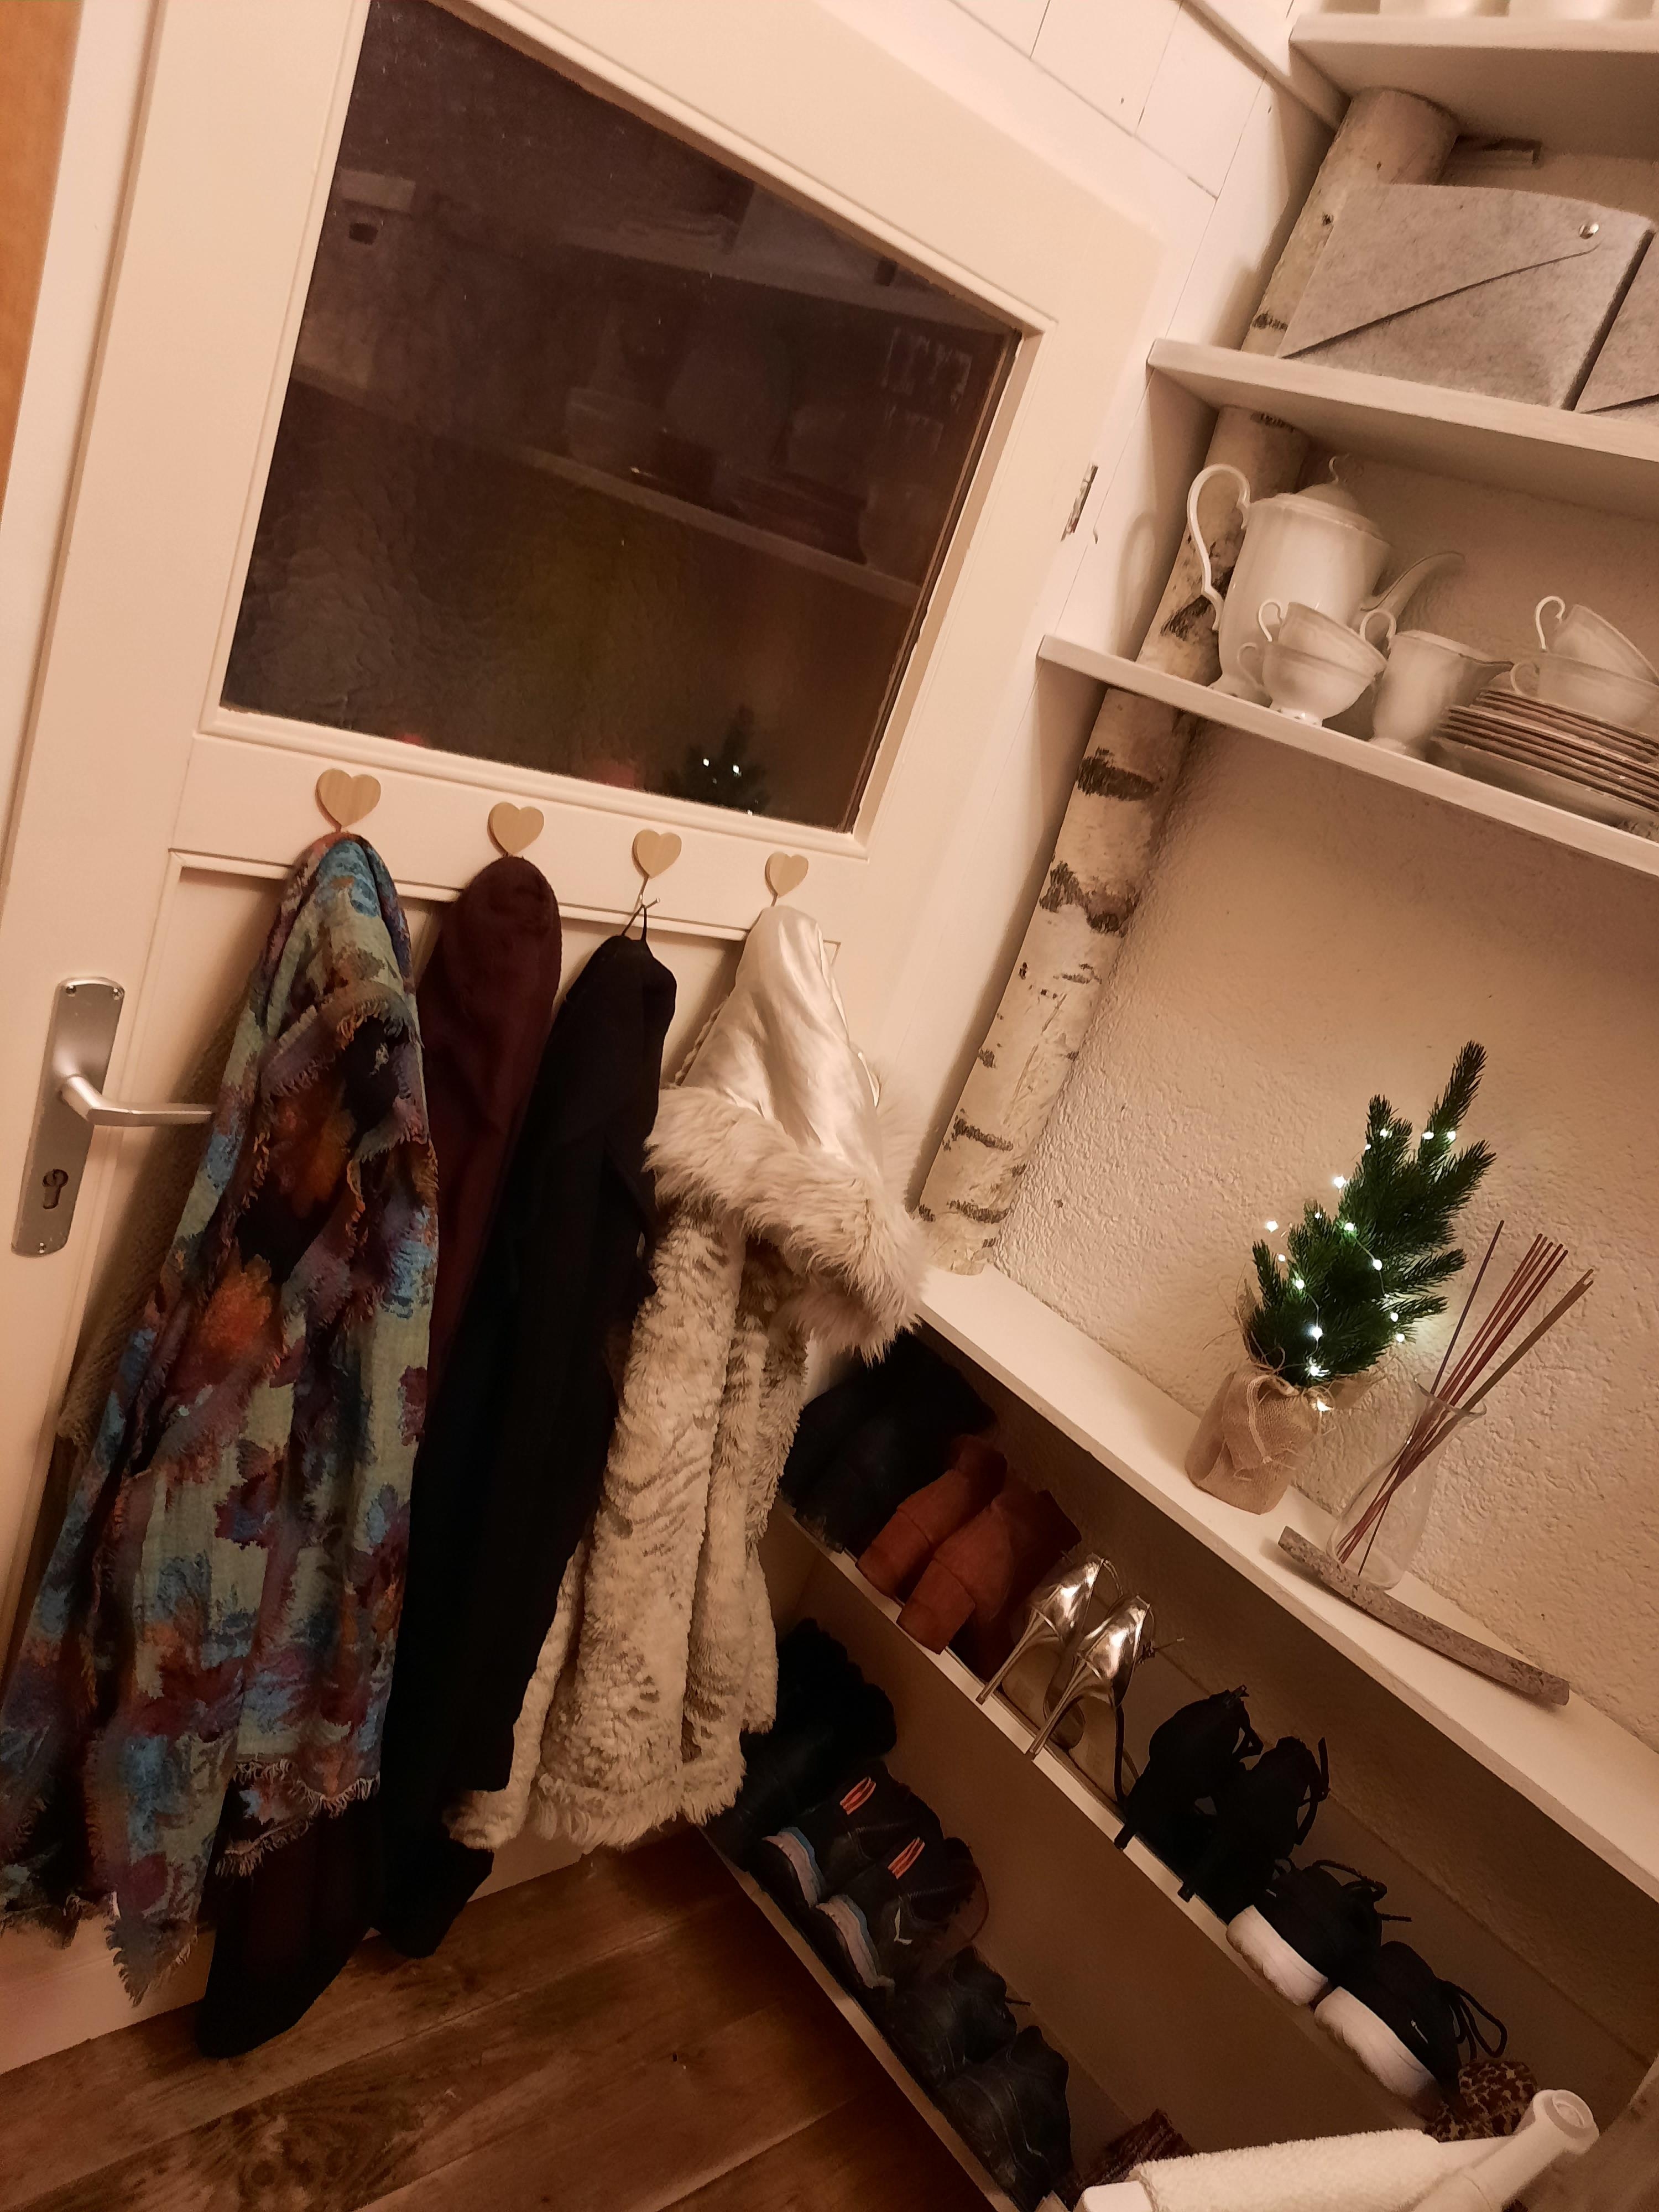 Meine kleine Werkstattwohnung...
#wohnung #werkstatt #weihnachten #weihnachtsdekoration #garderobe #regale #stauraum #kleinaberfein #couchstyle 